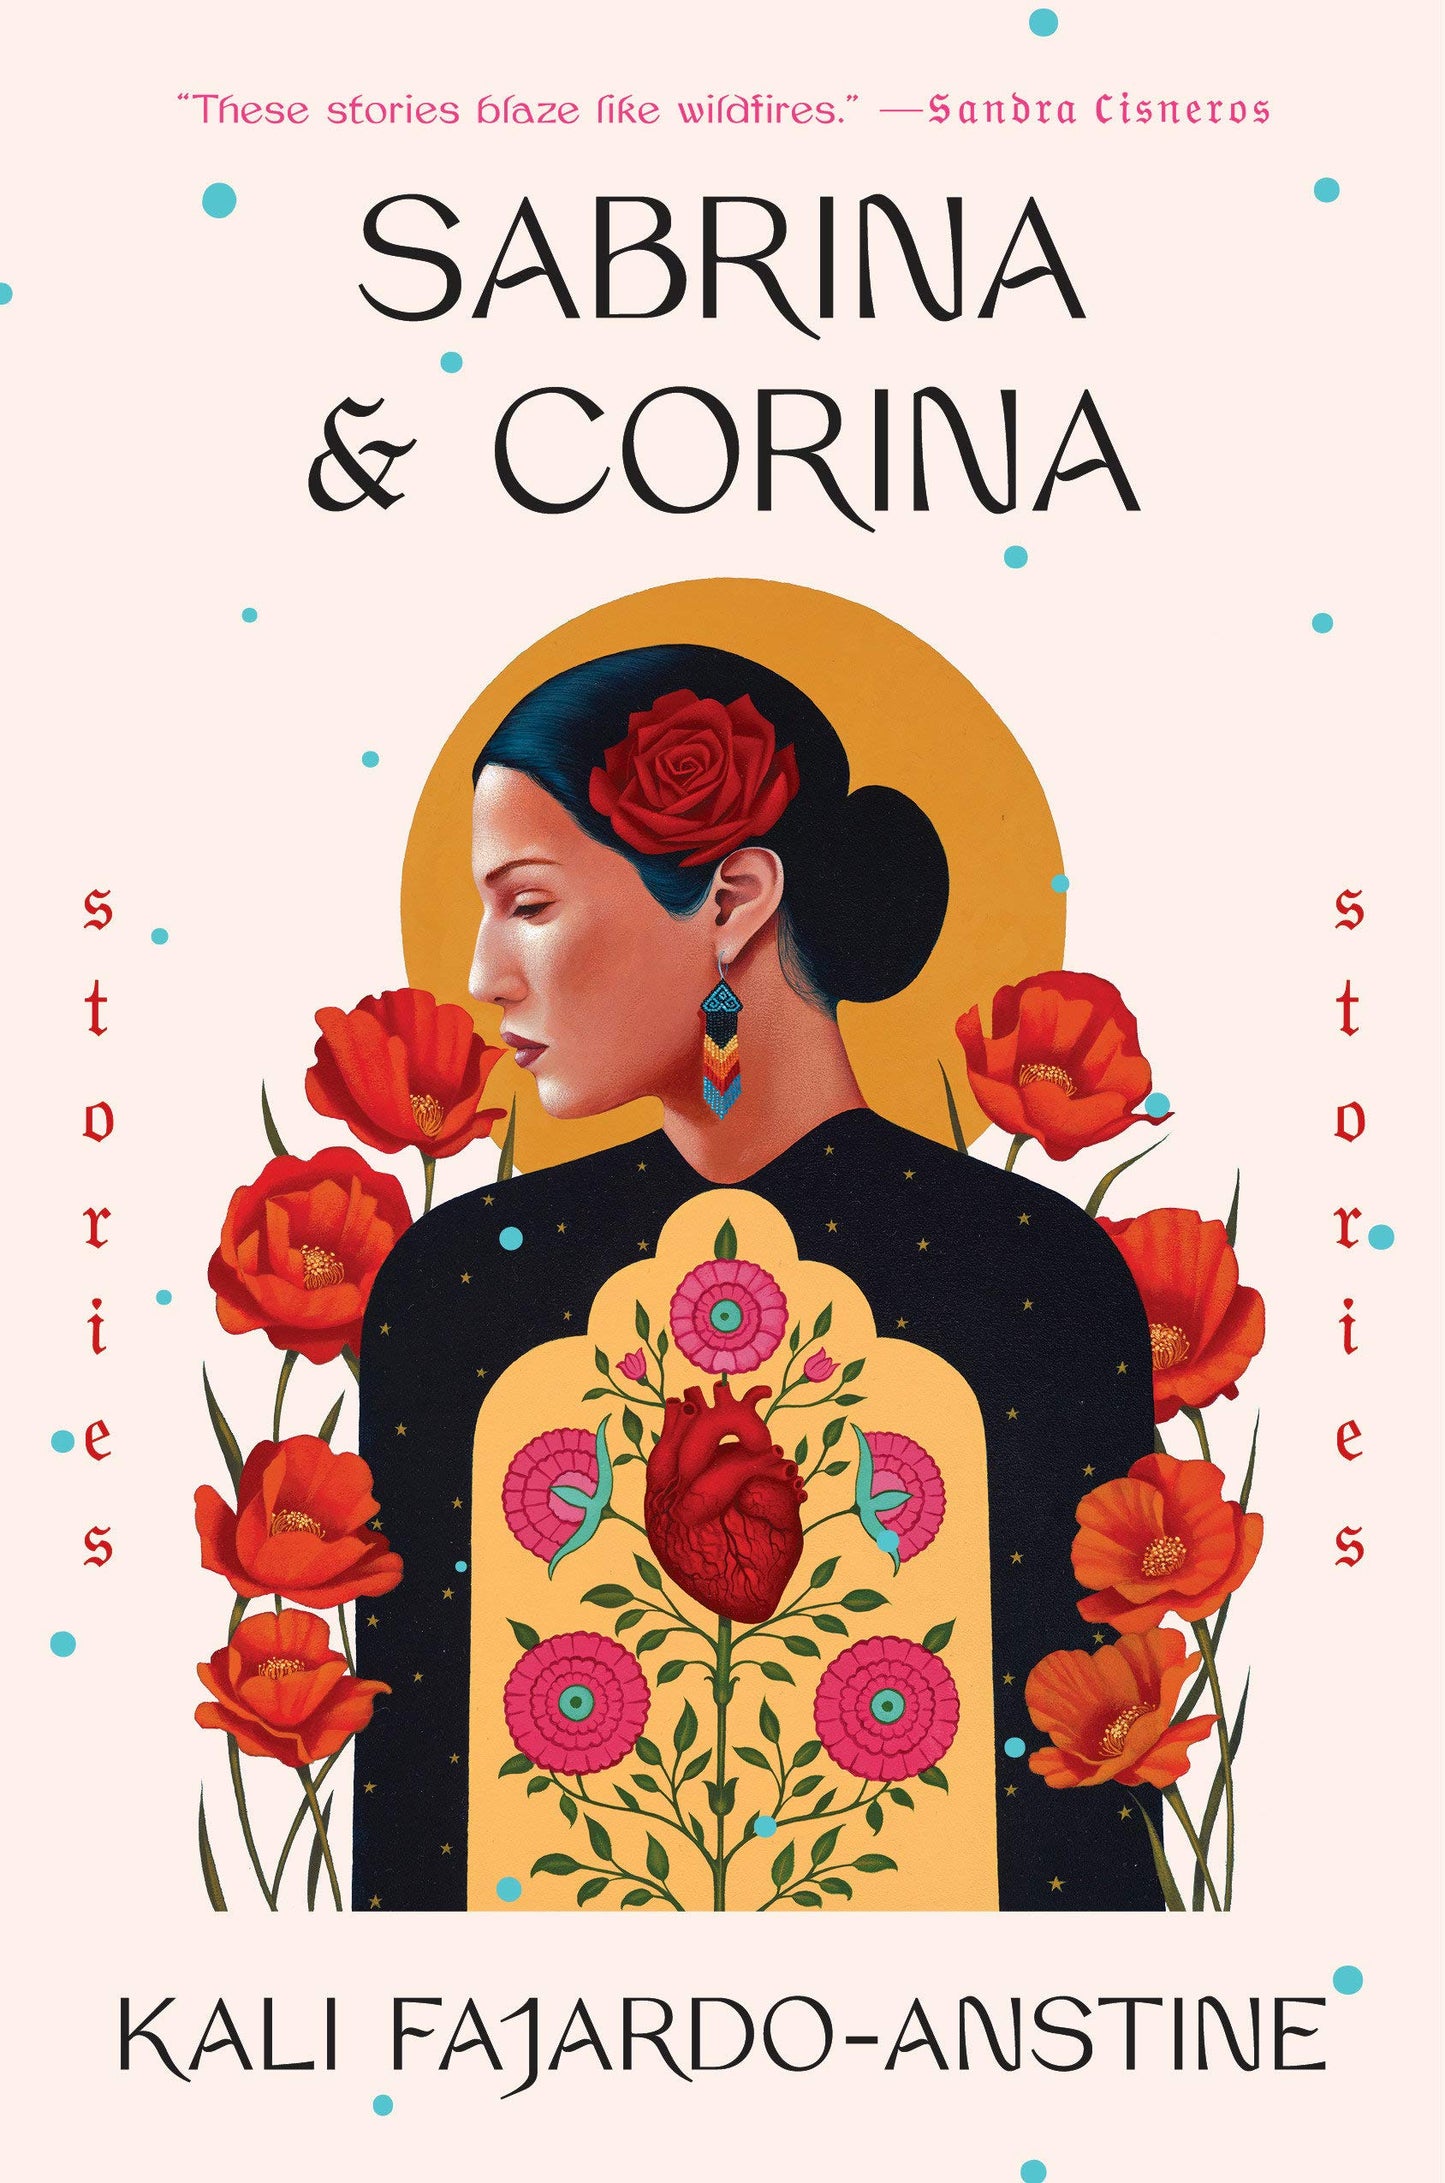 Sabrina & Corina // Stories